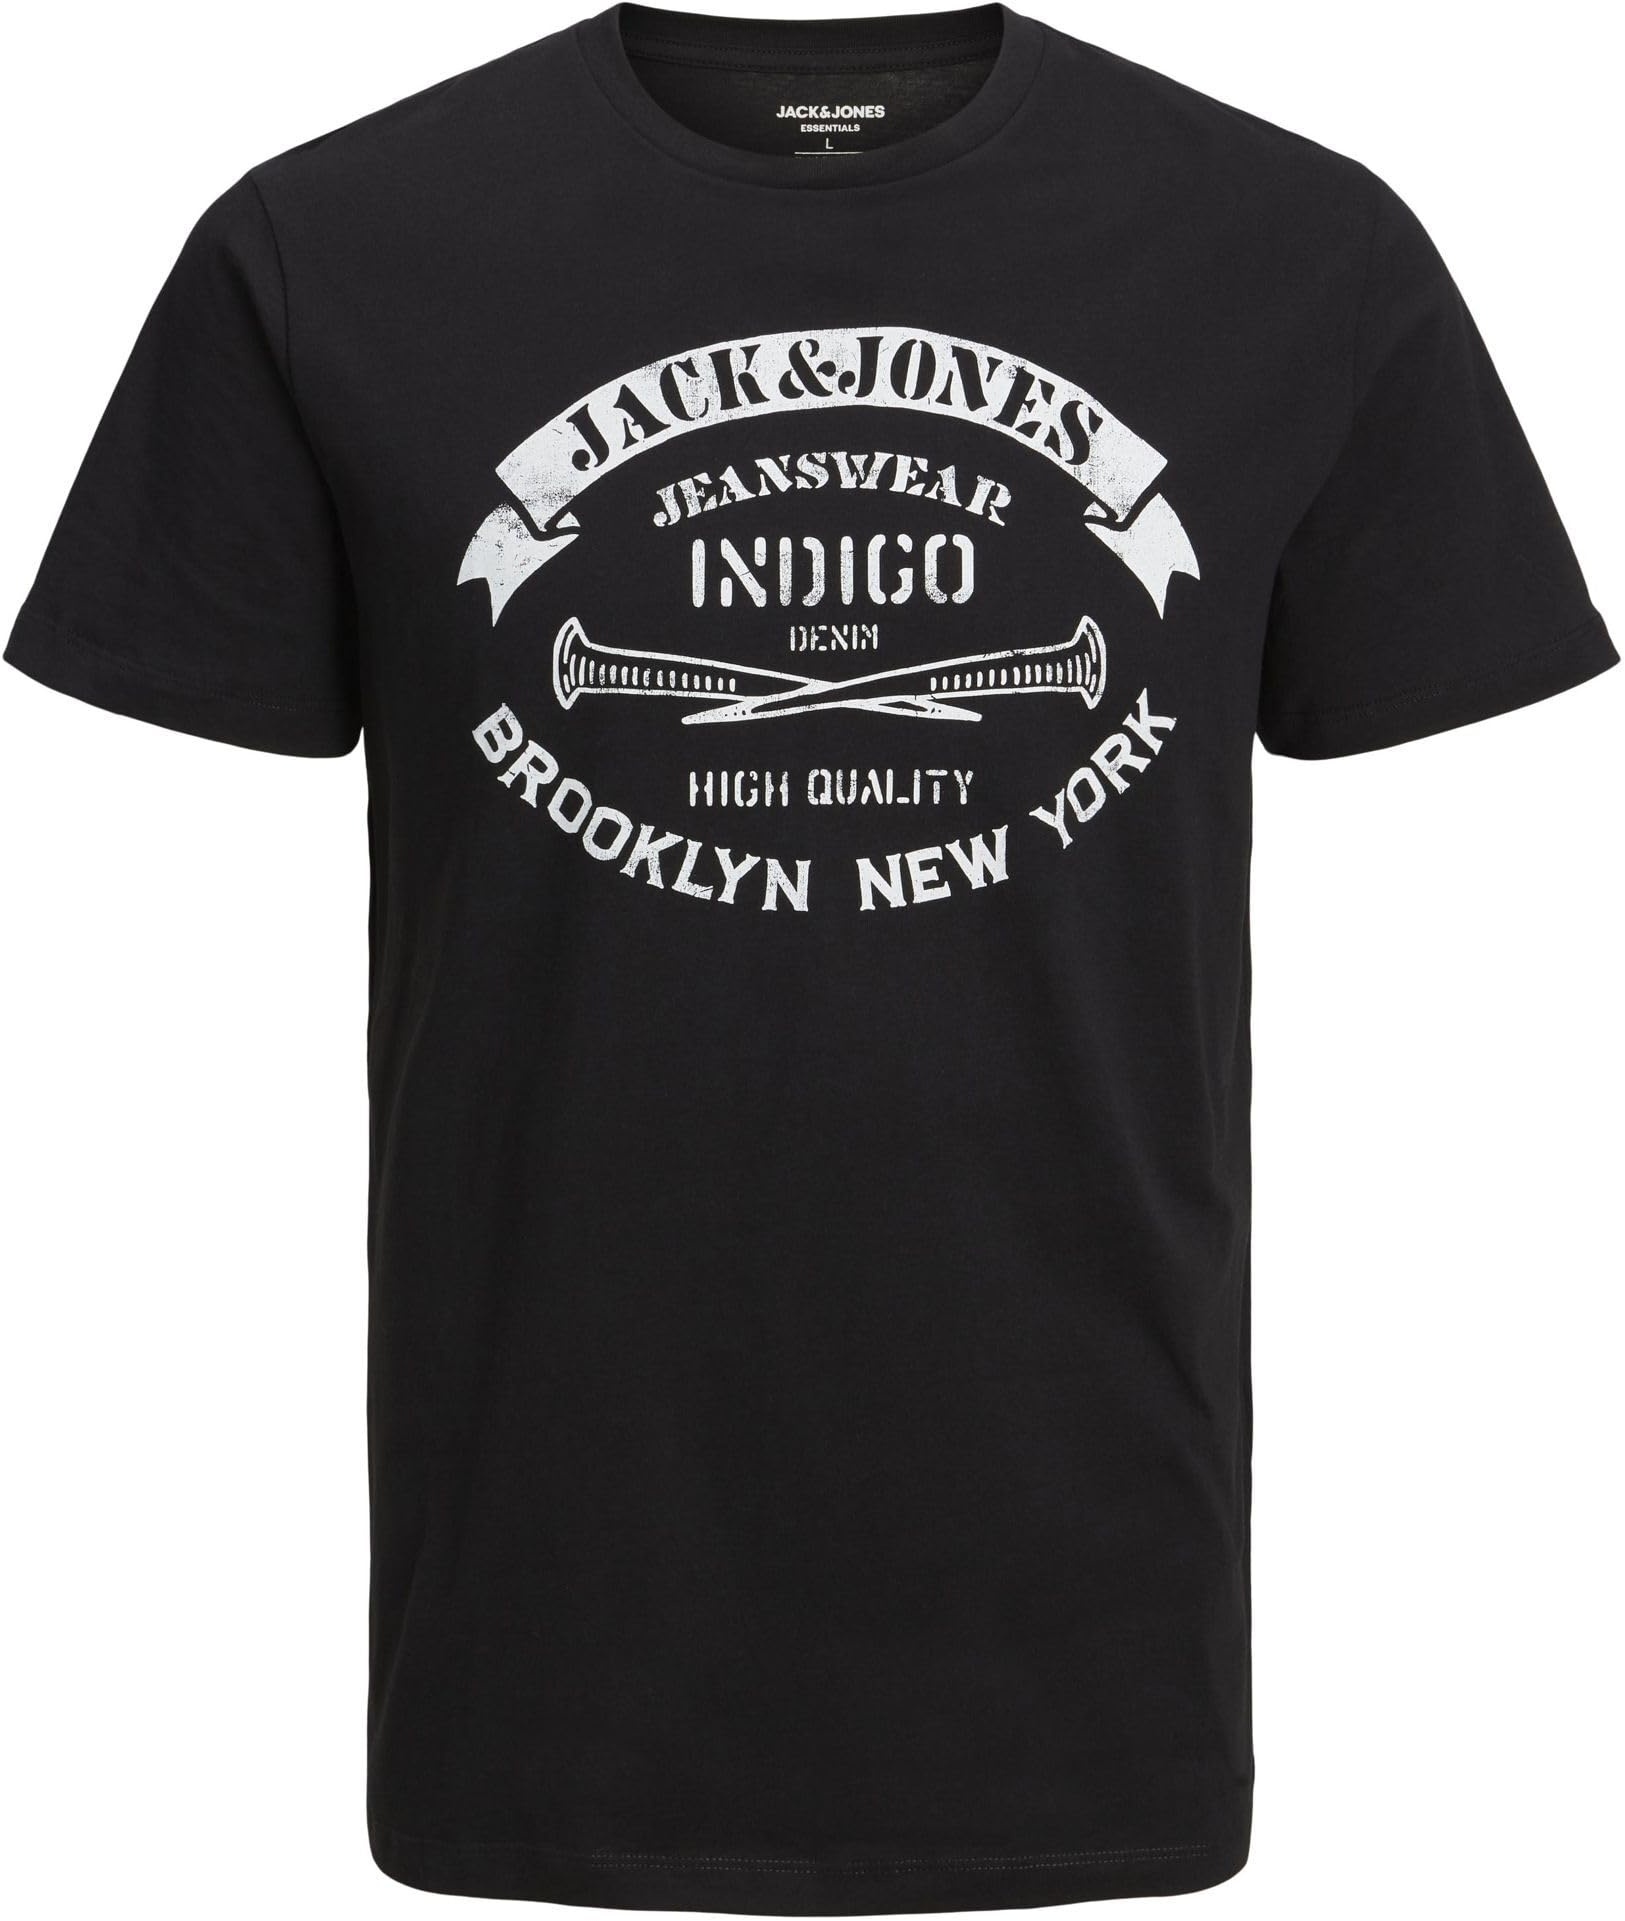 JACK & JONES Herren Rundhals T-Shirt JJEJEANS - Regular Fit S M L XL XXL Cotton, Größe:L, Farbe:Black 12232972